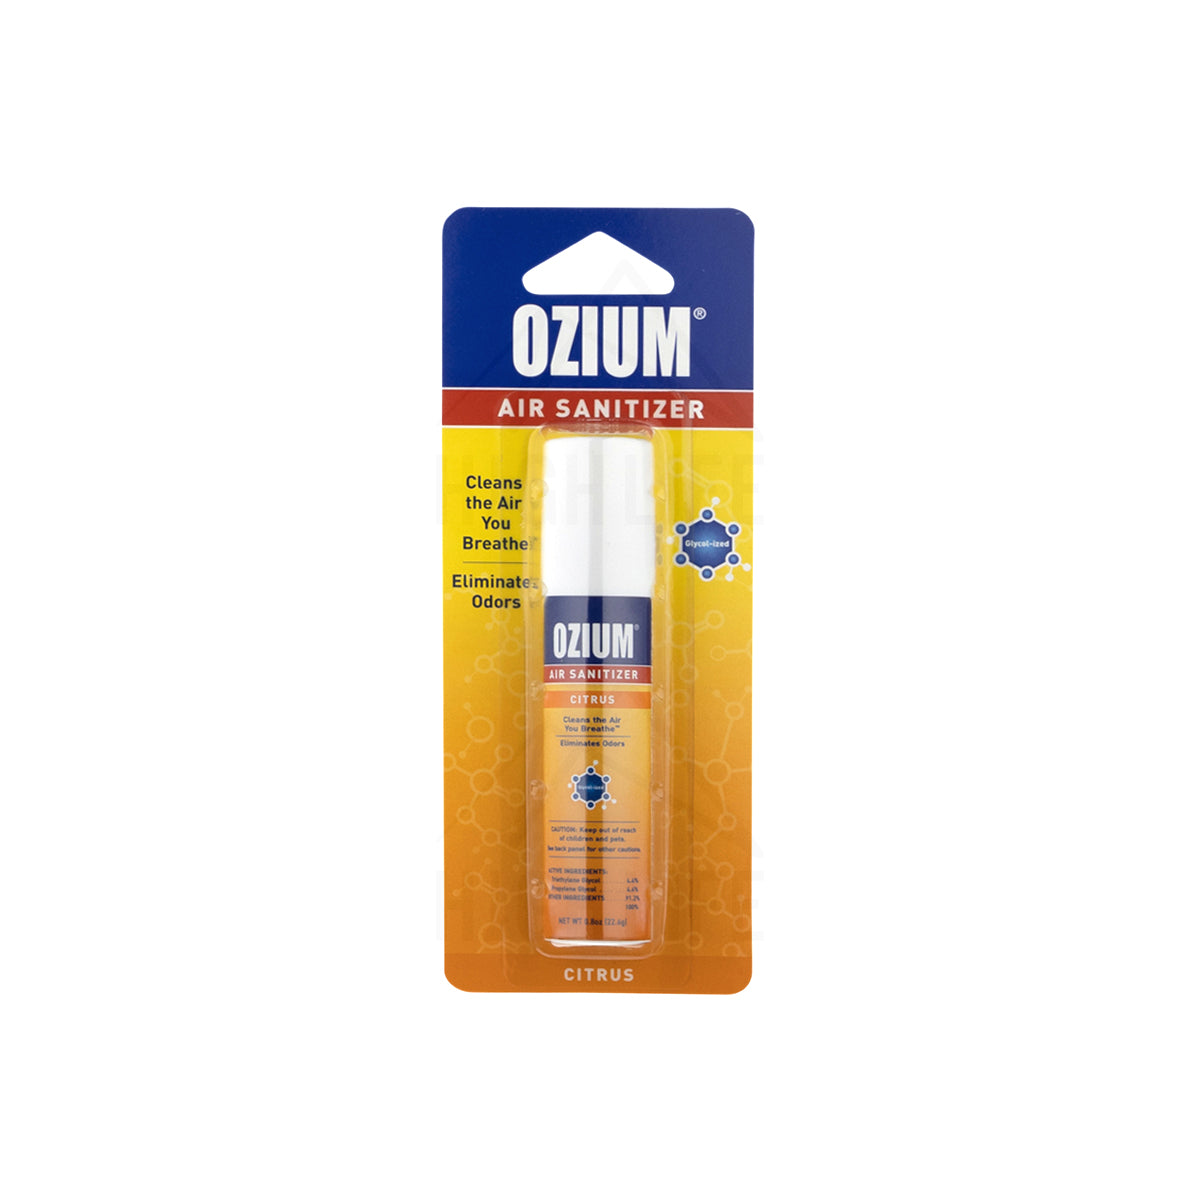 Ozium 0.8oz Citrus Air Sanitizer